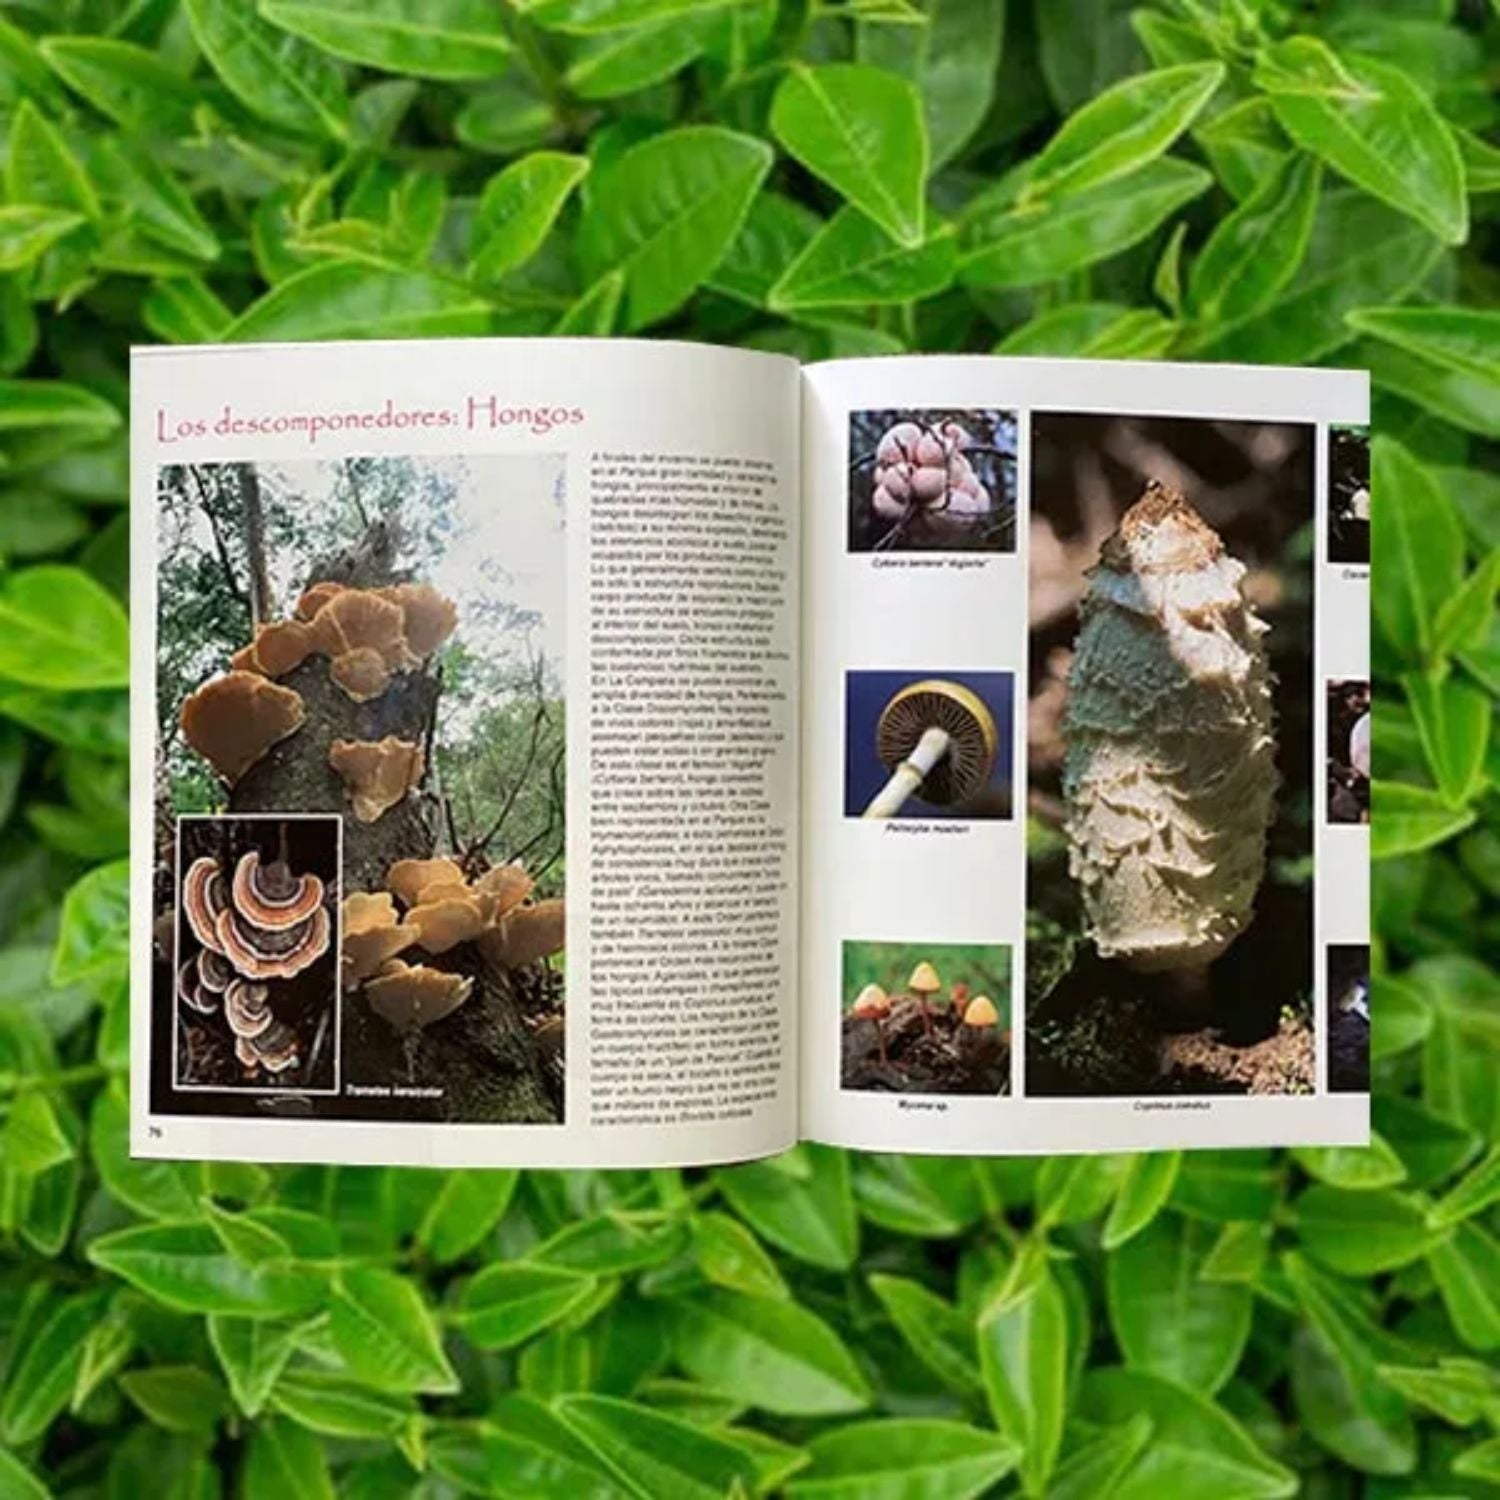 Parque Nacional La Campana - Flora y Fauna - Segunda edición